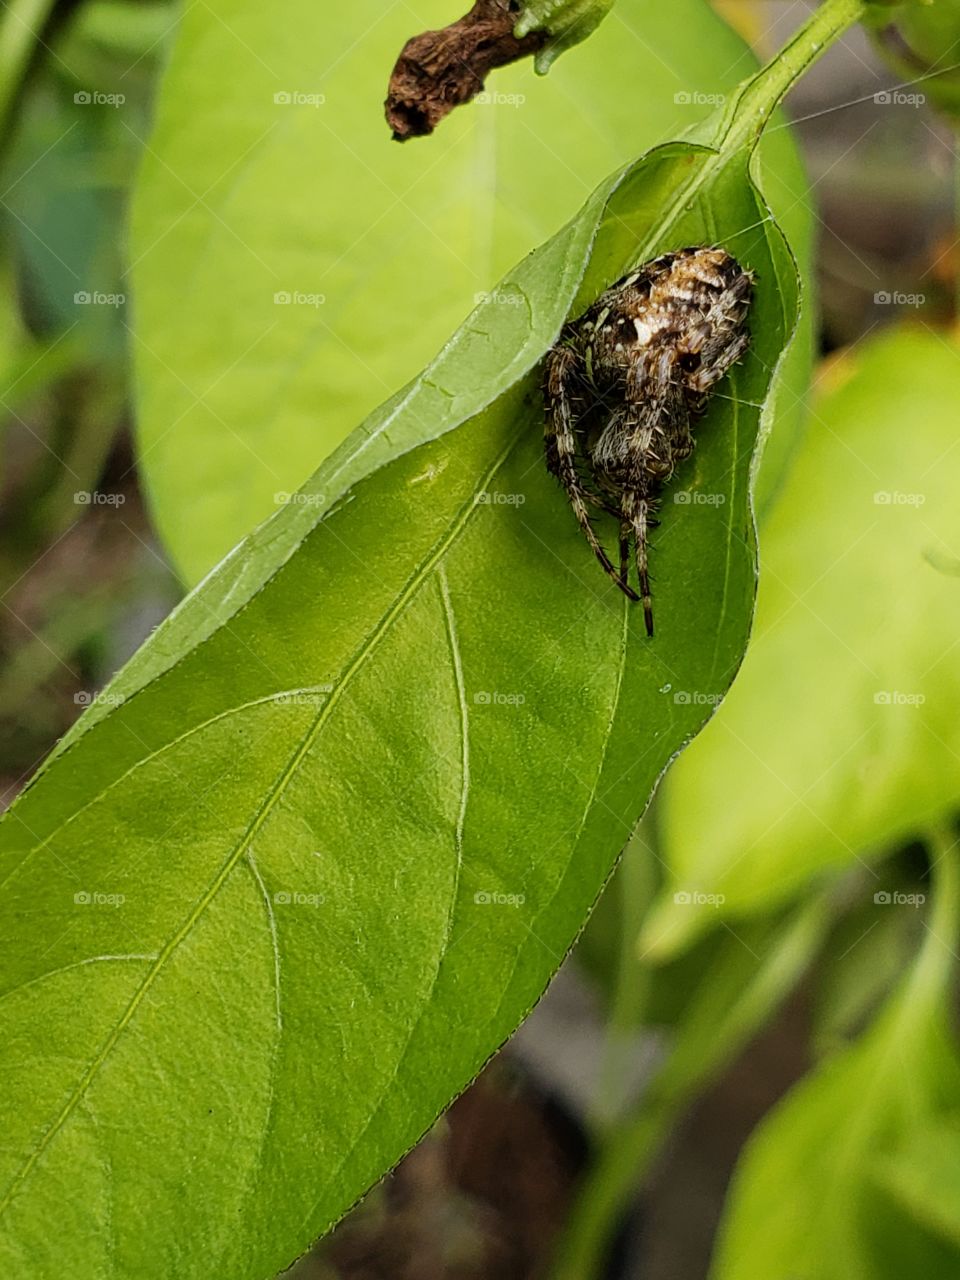 Sweetly sleeping garden spider